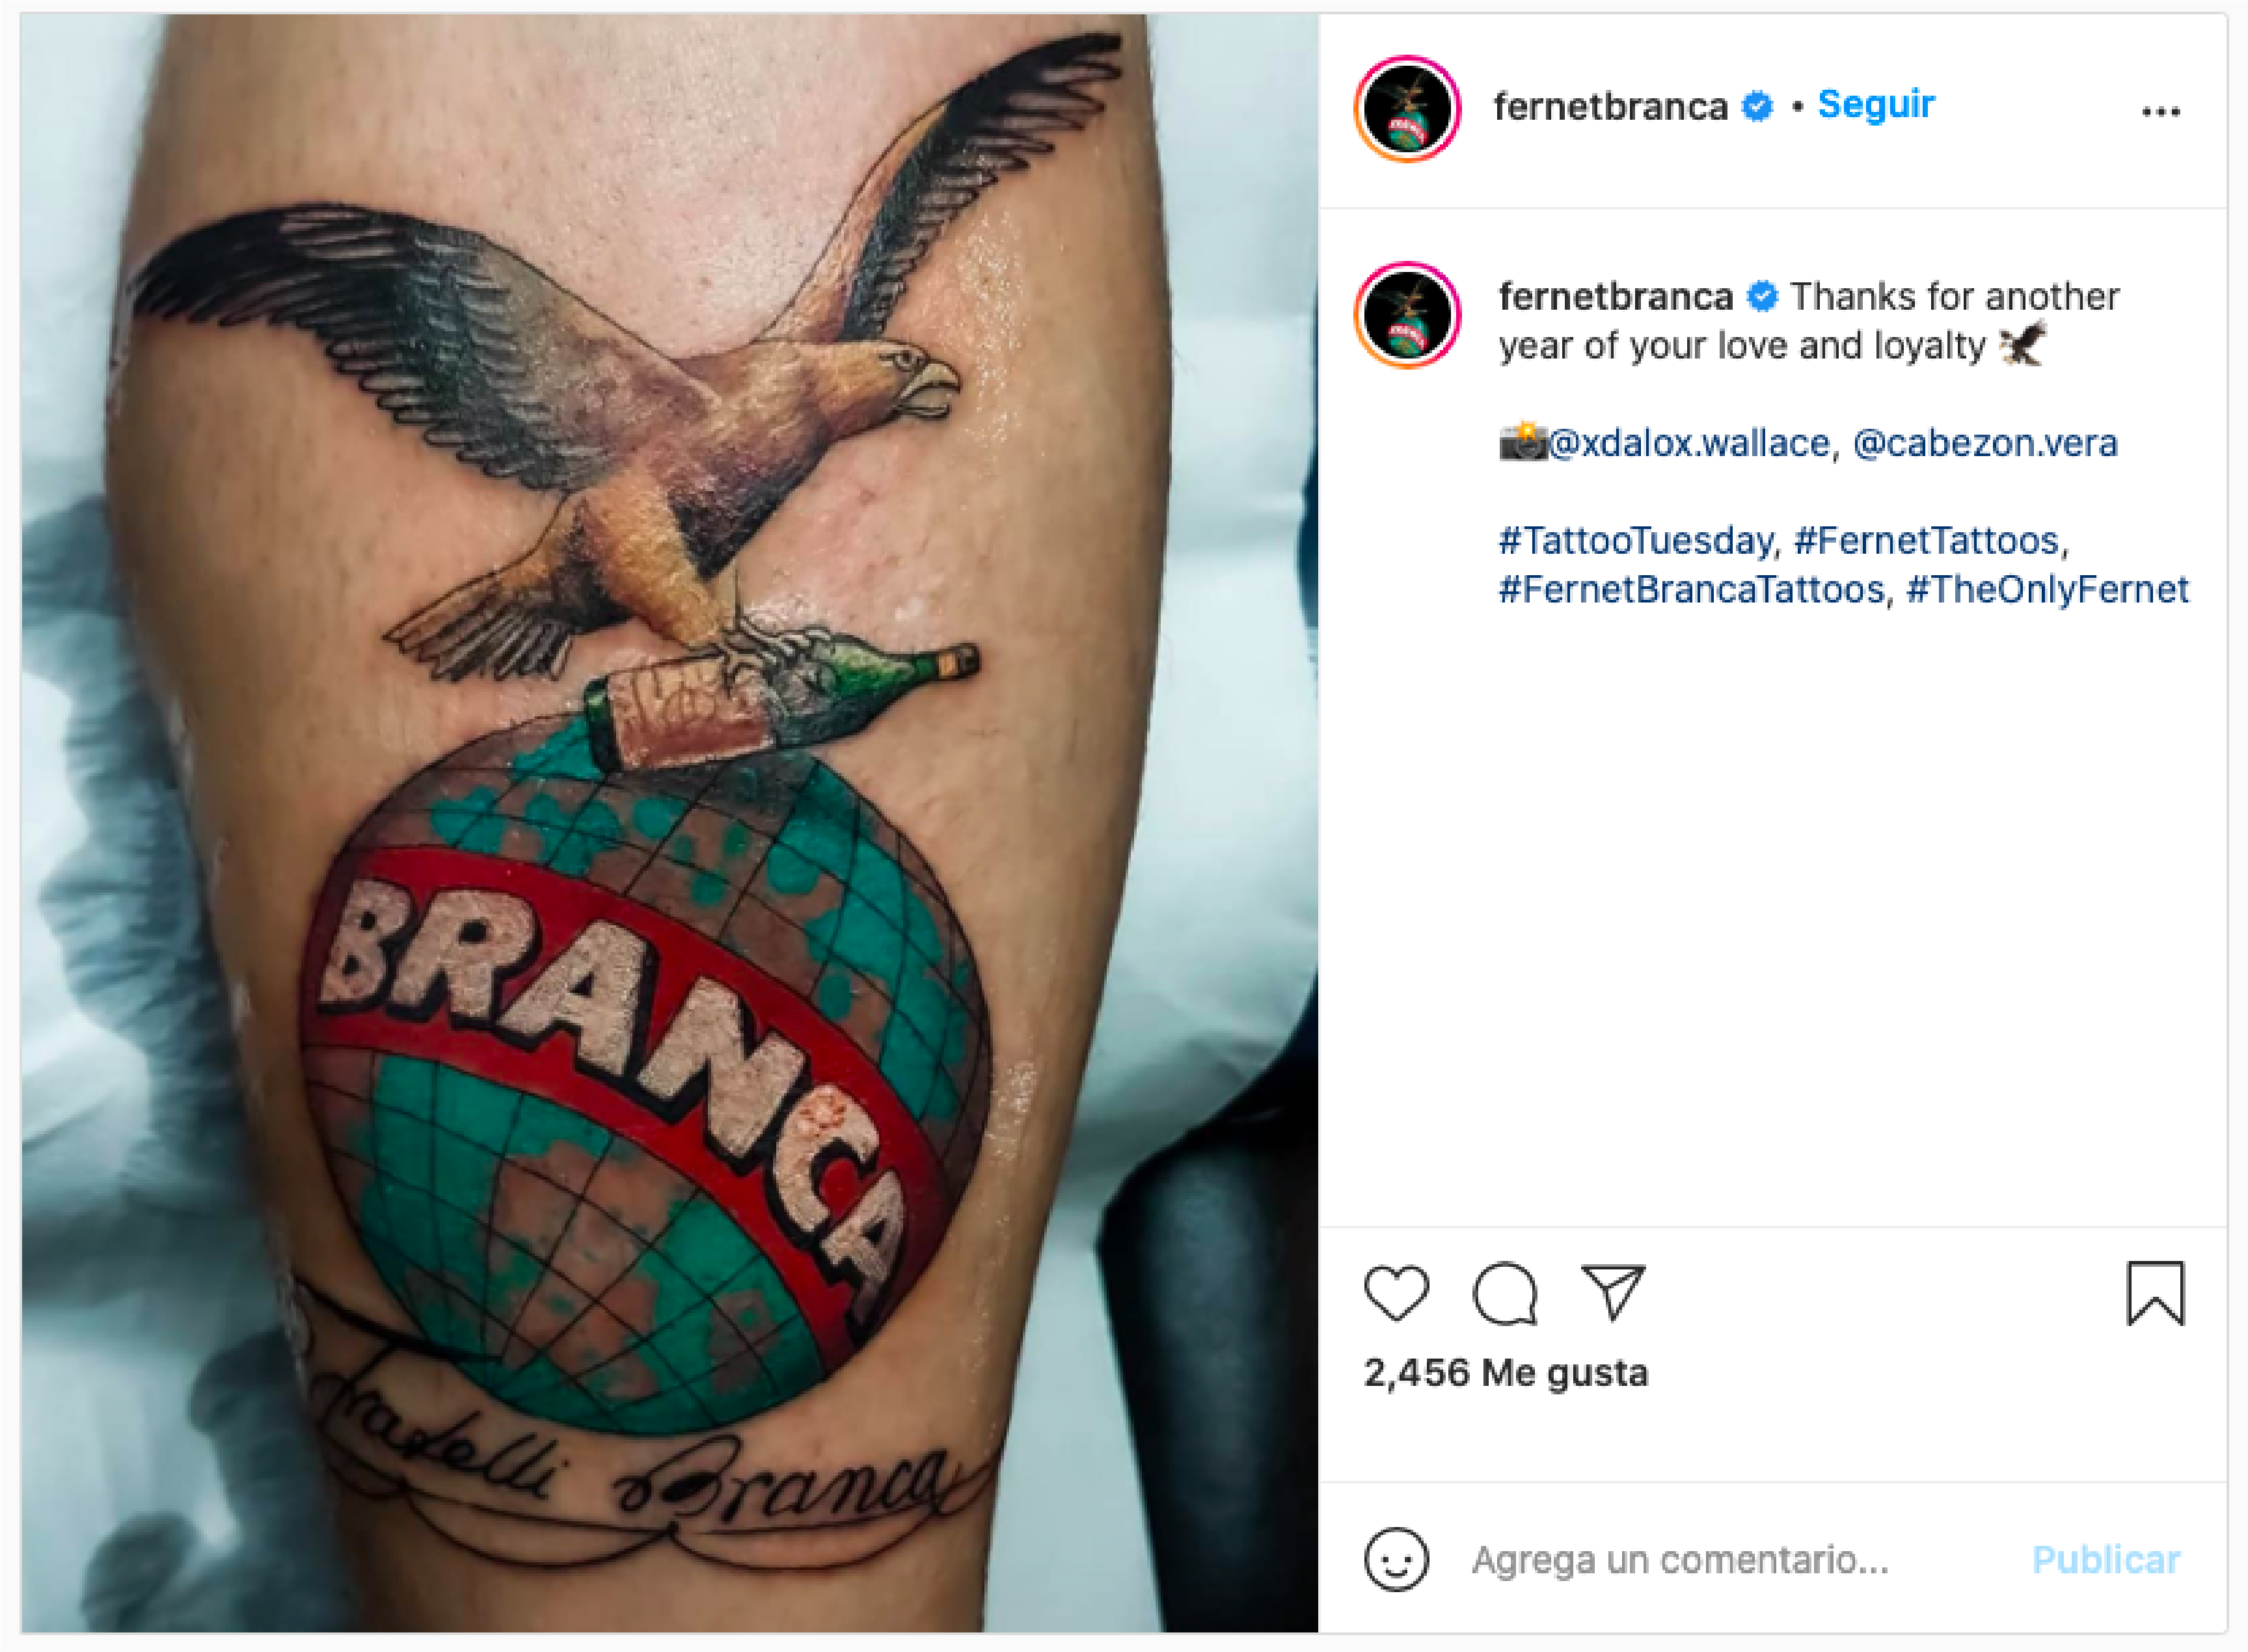 El hombre que se tatuó el logo del Fernet Branca - Aldiome Misiones